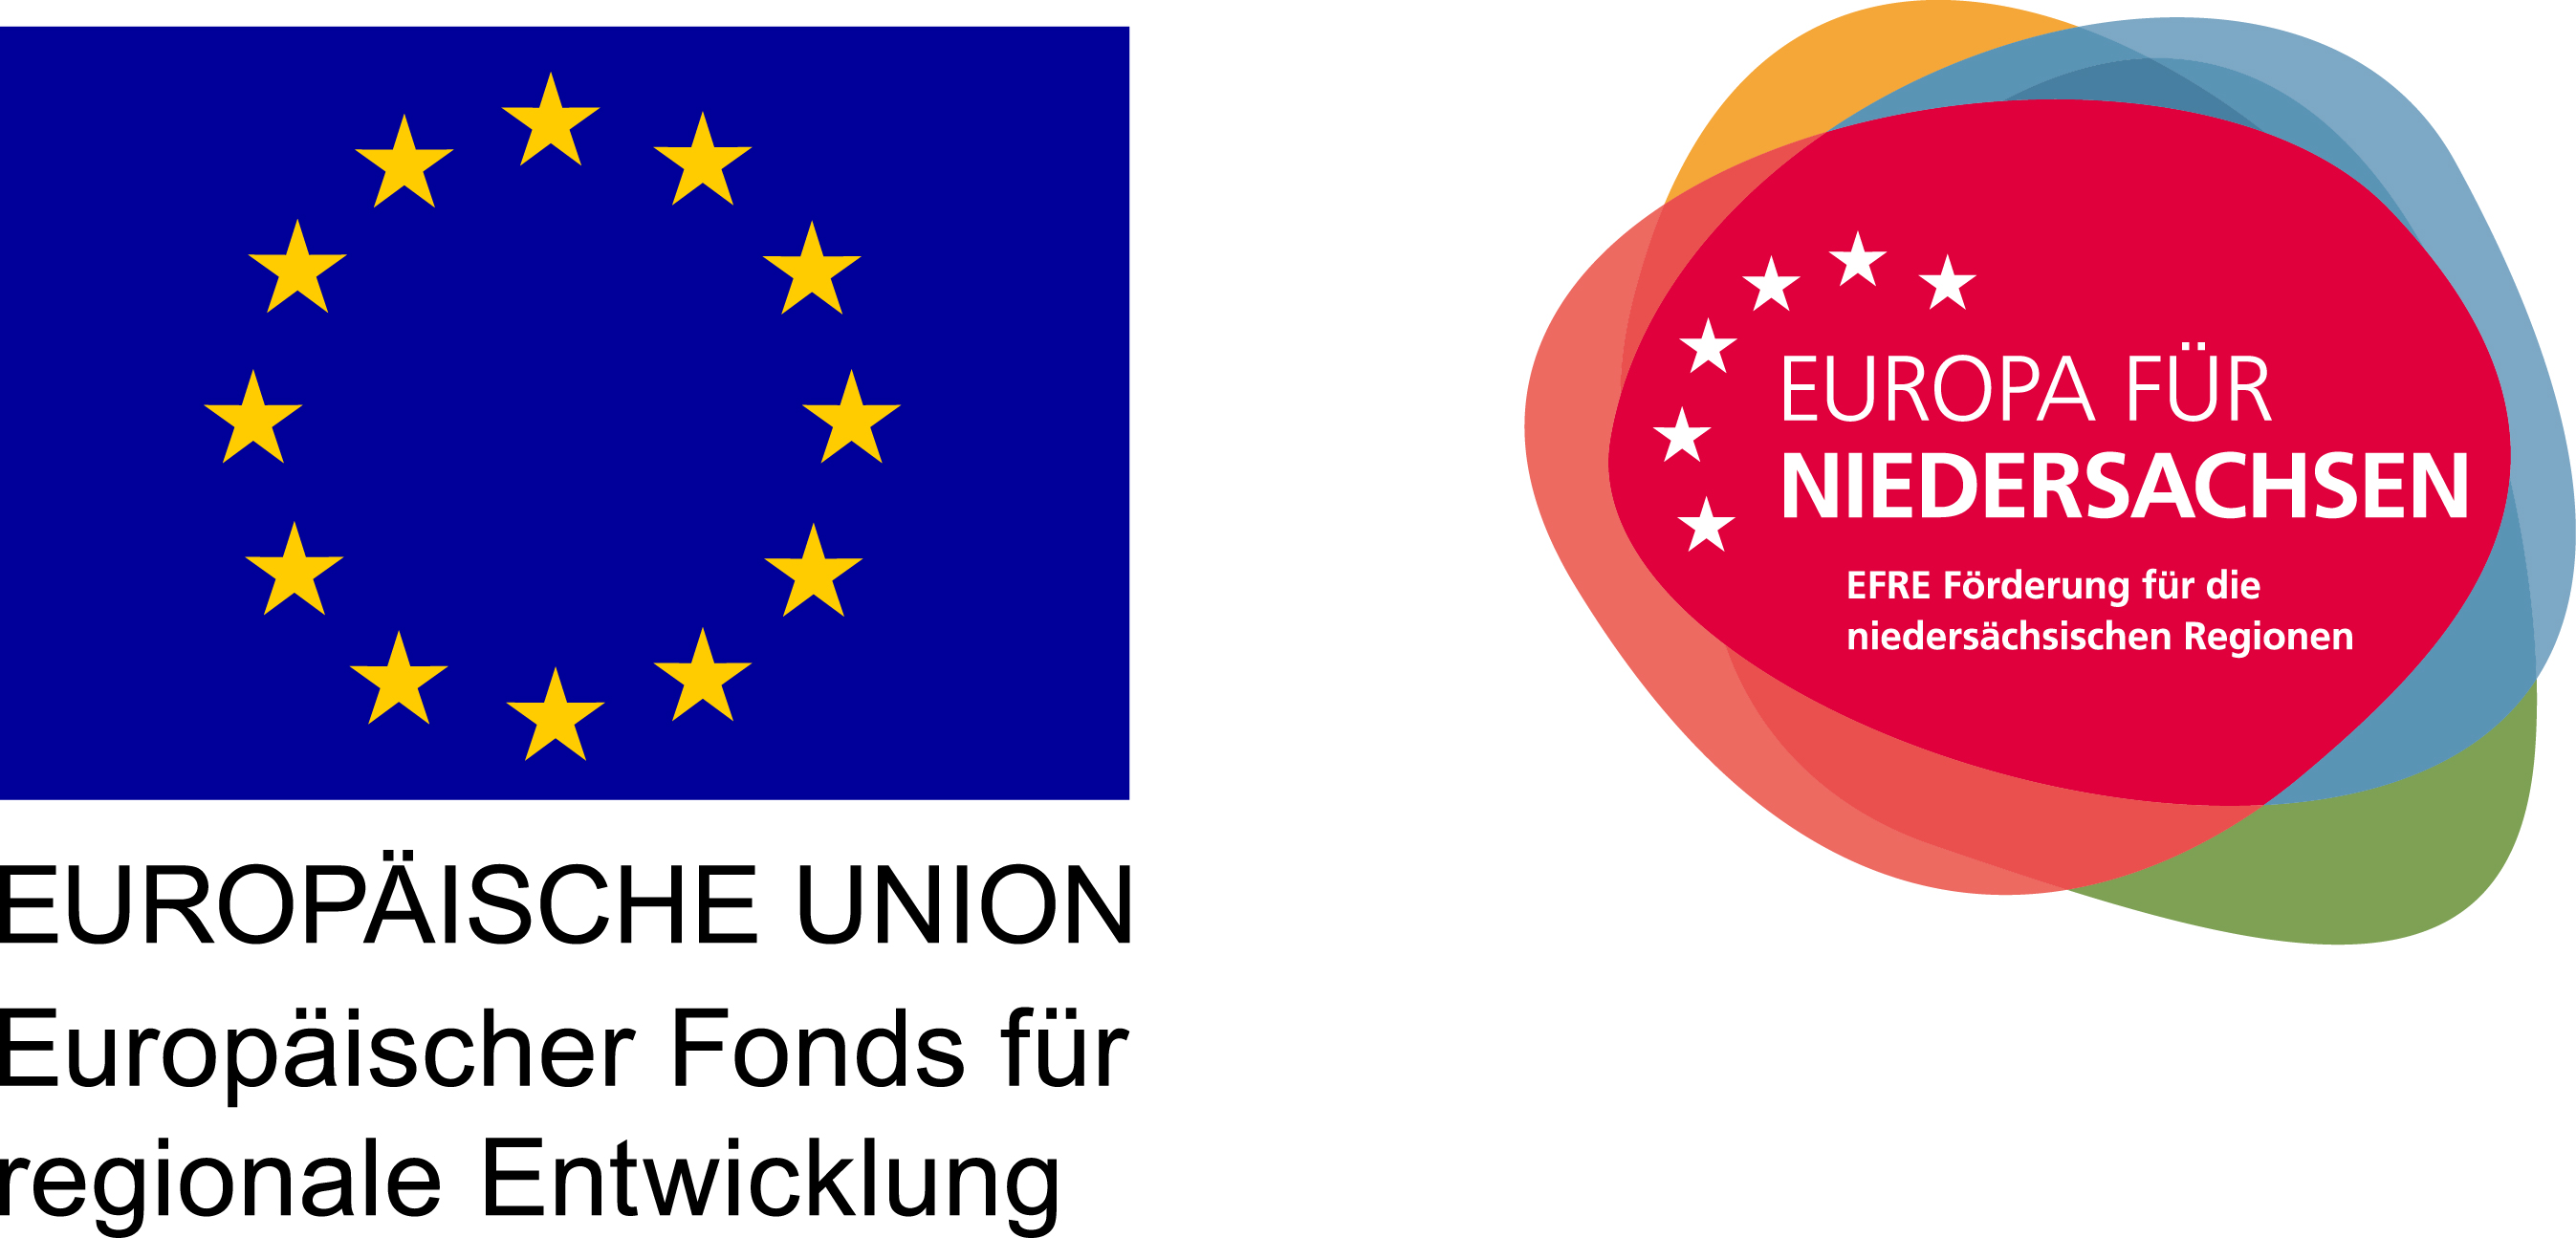 EU - Europäischer Fonds für regionale Entwicklung